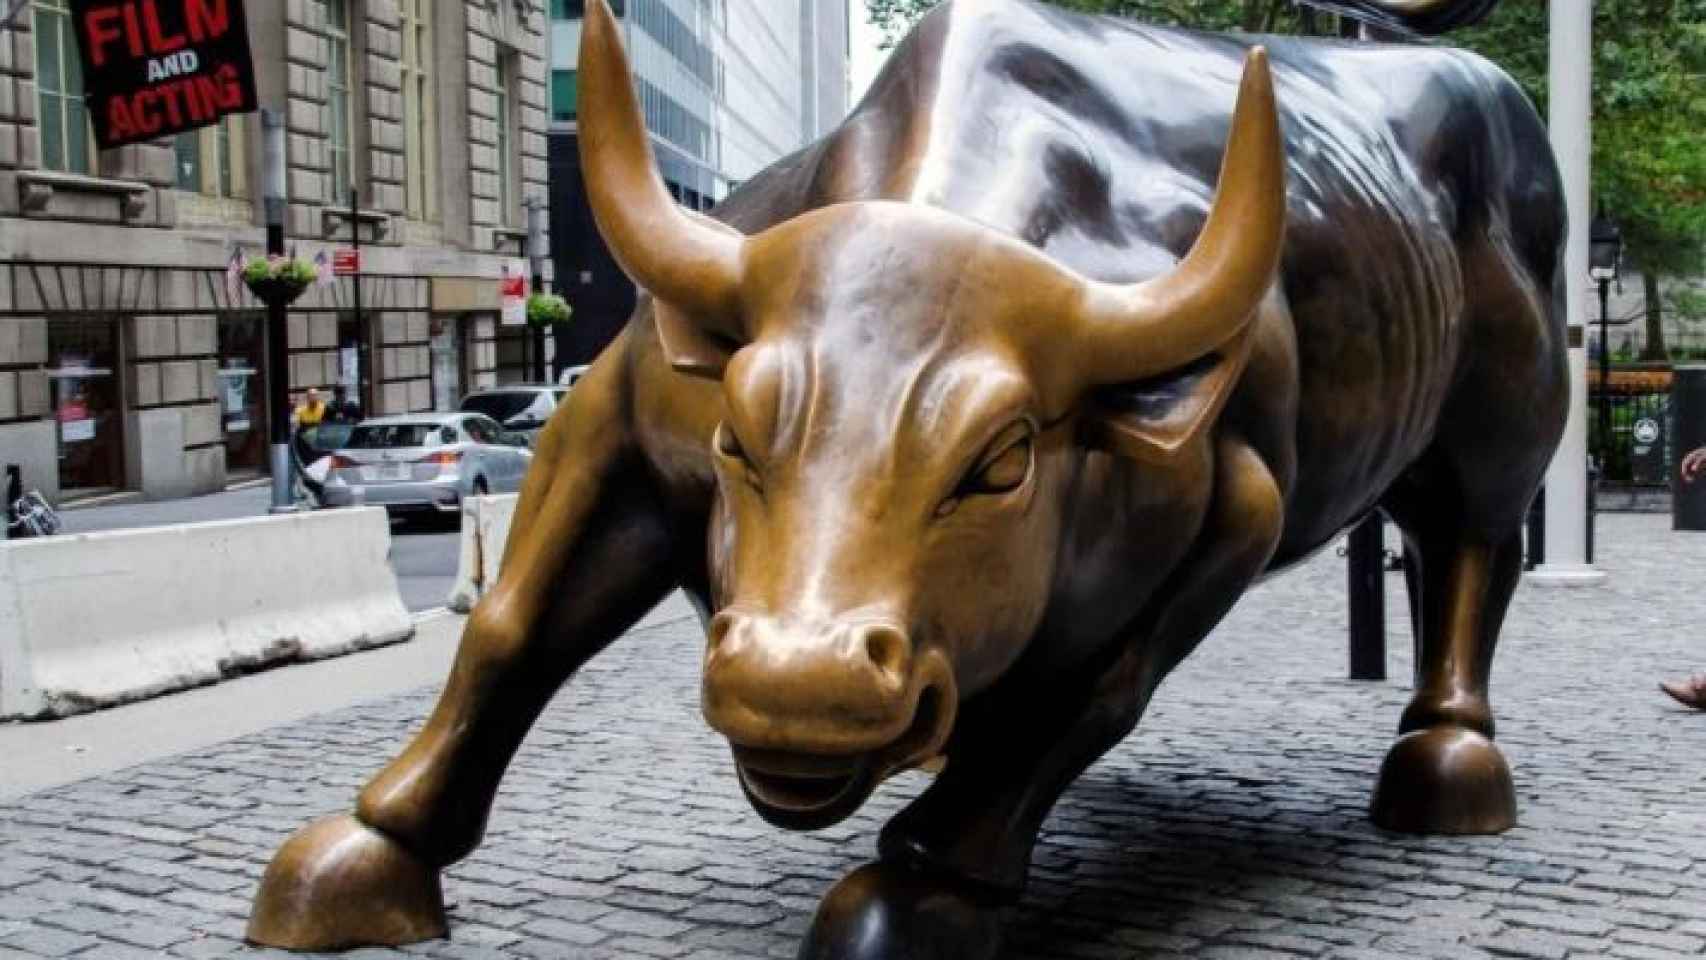 Escultura del toro de Wall Street.